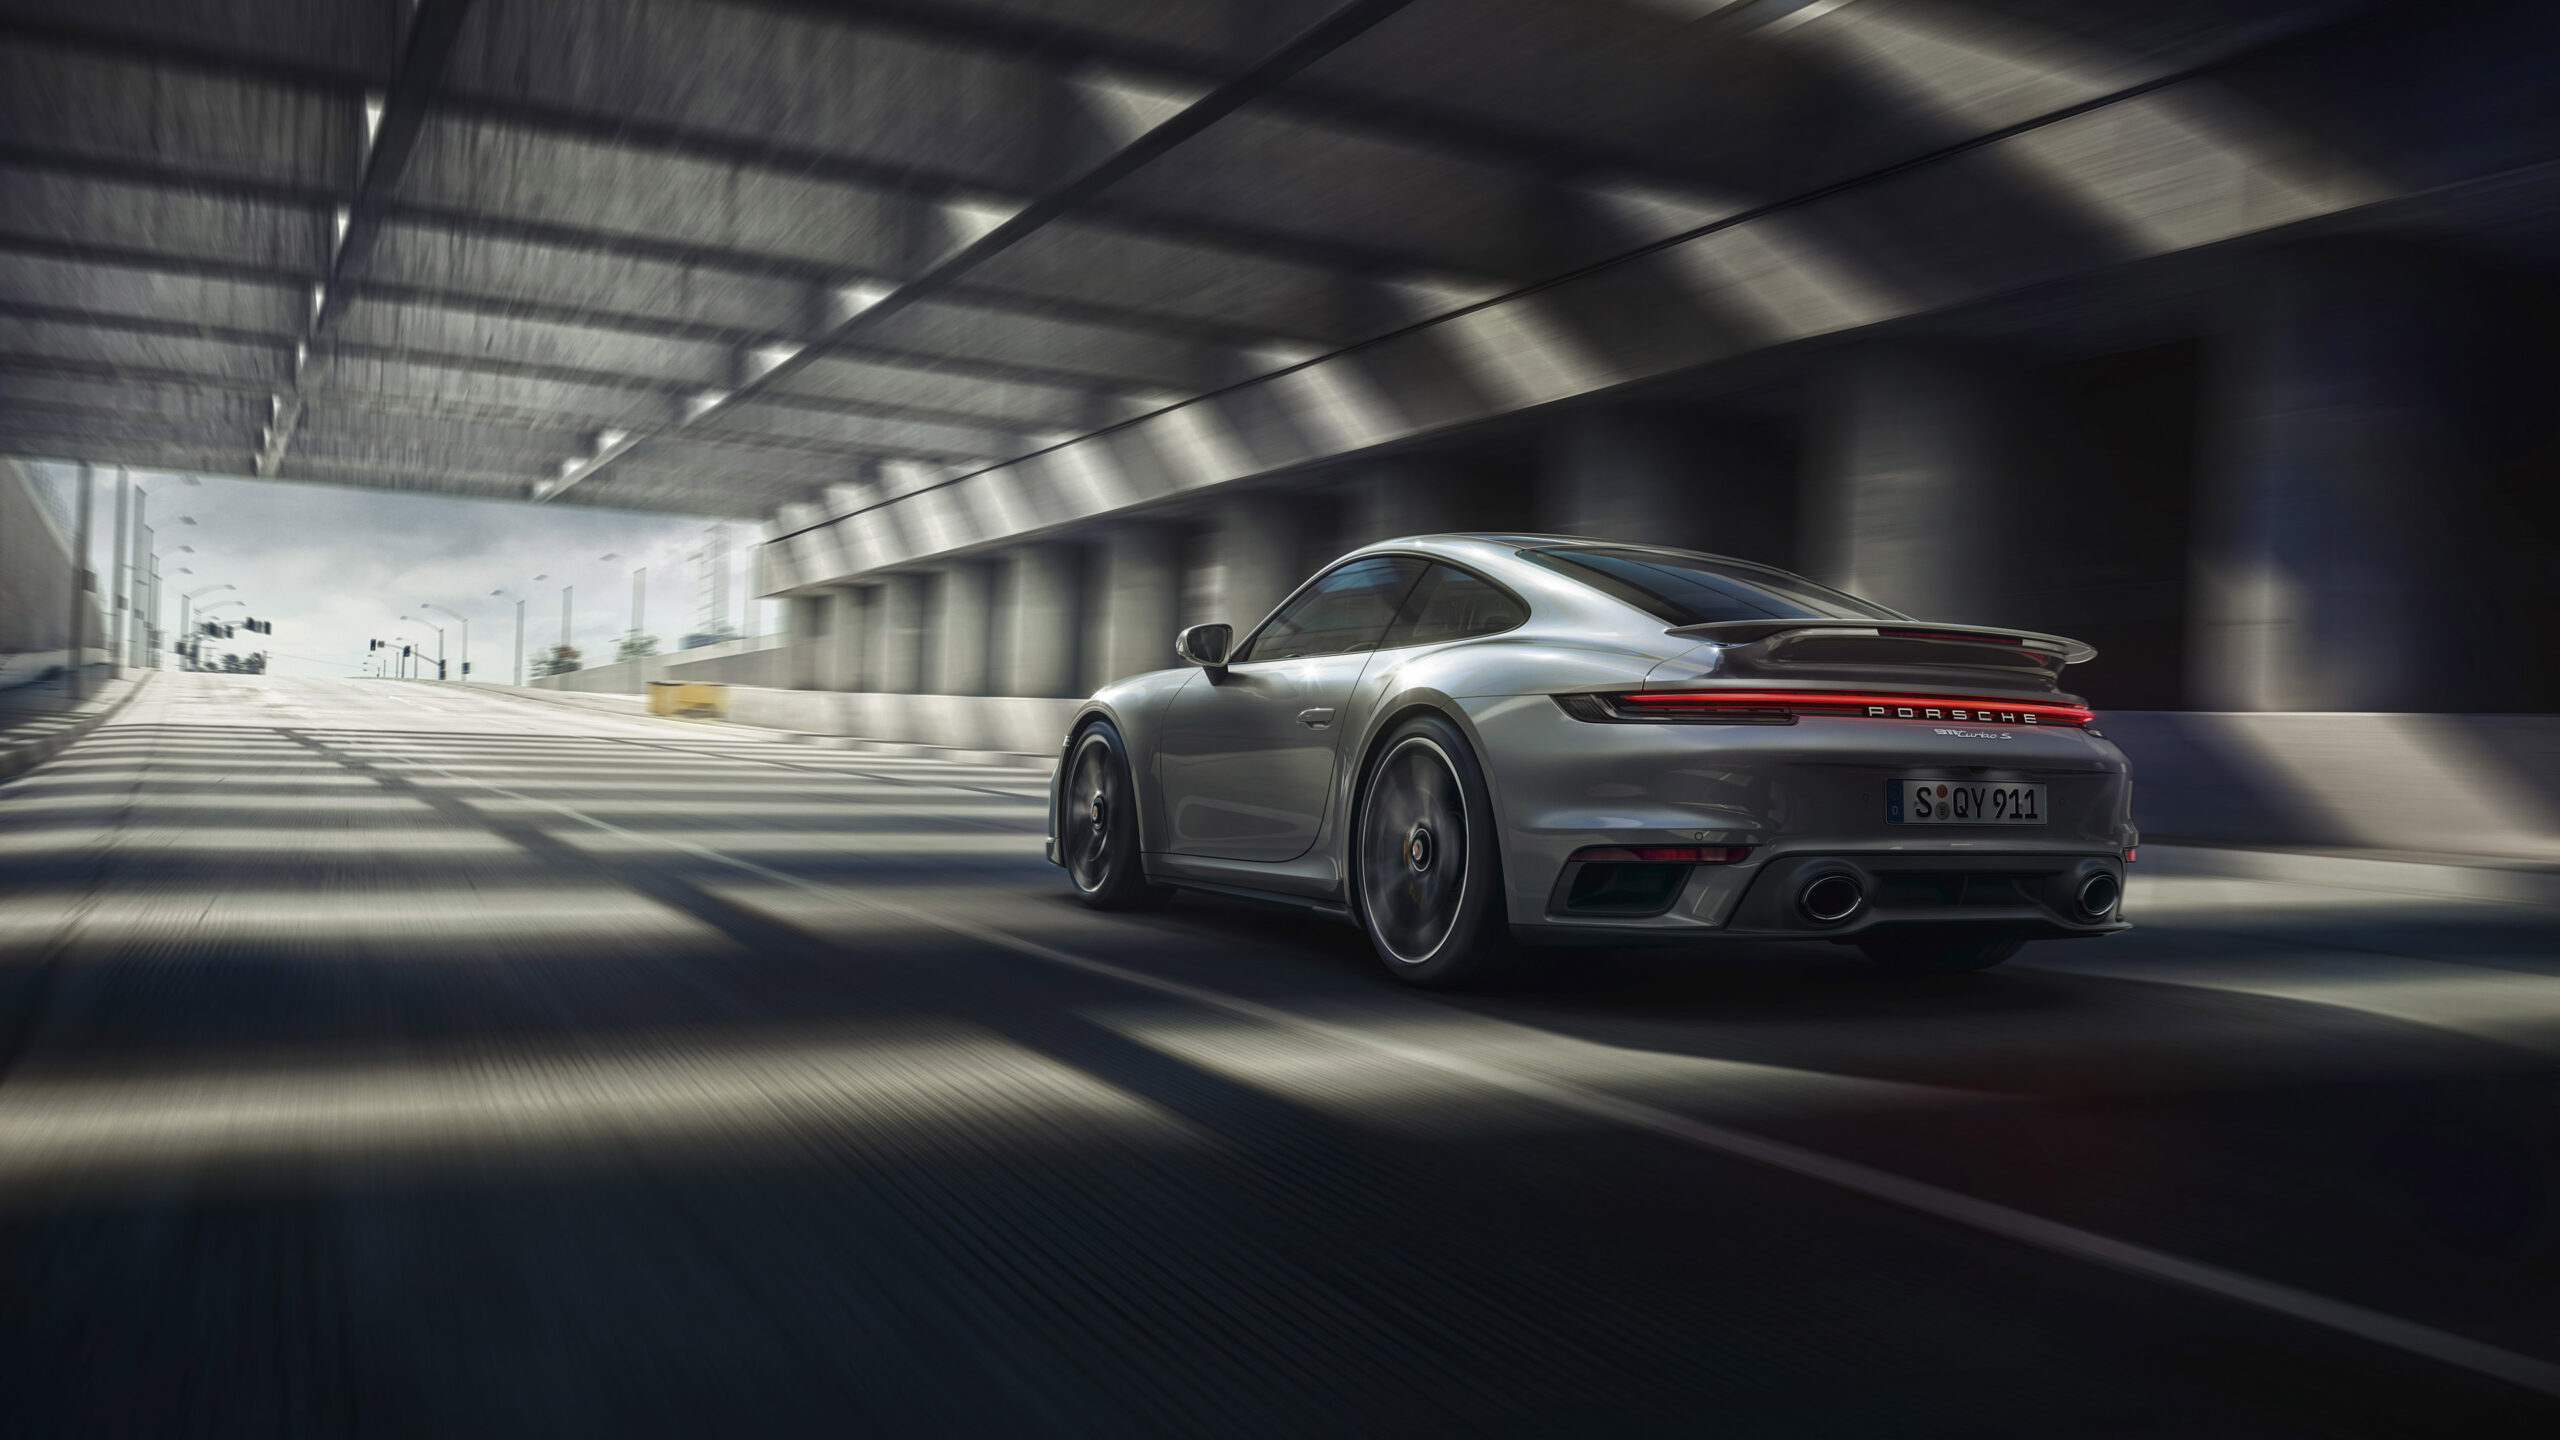 2020 Porsche 911 Turbo Wallpapers